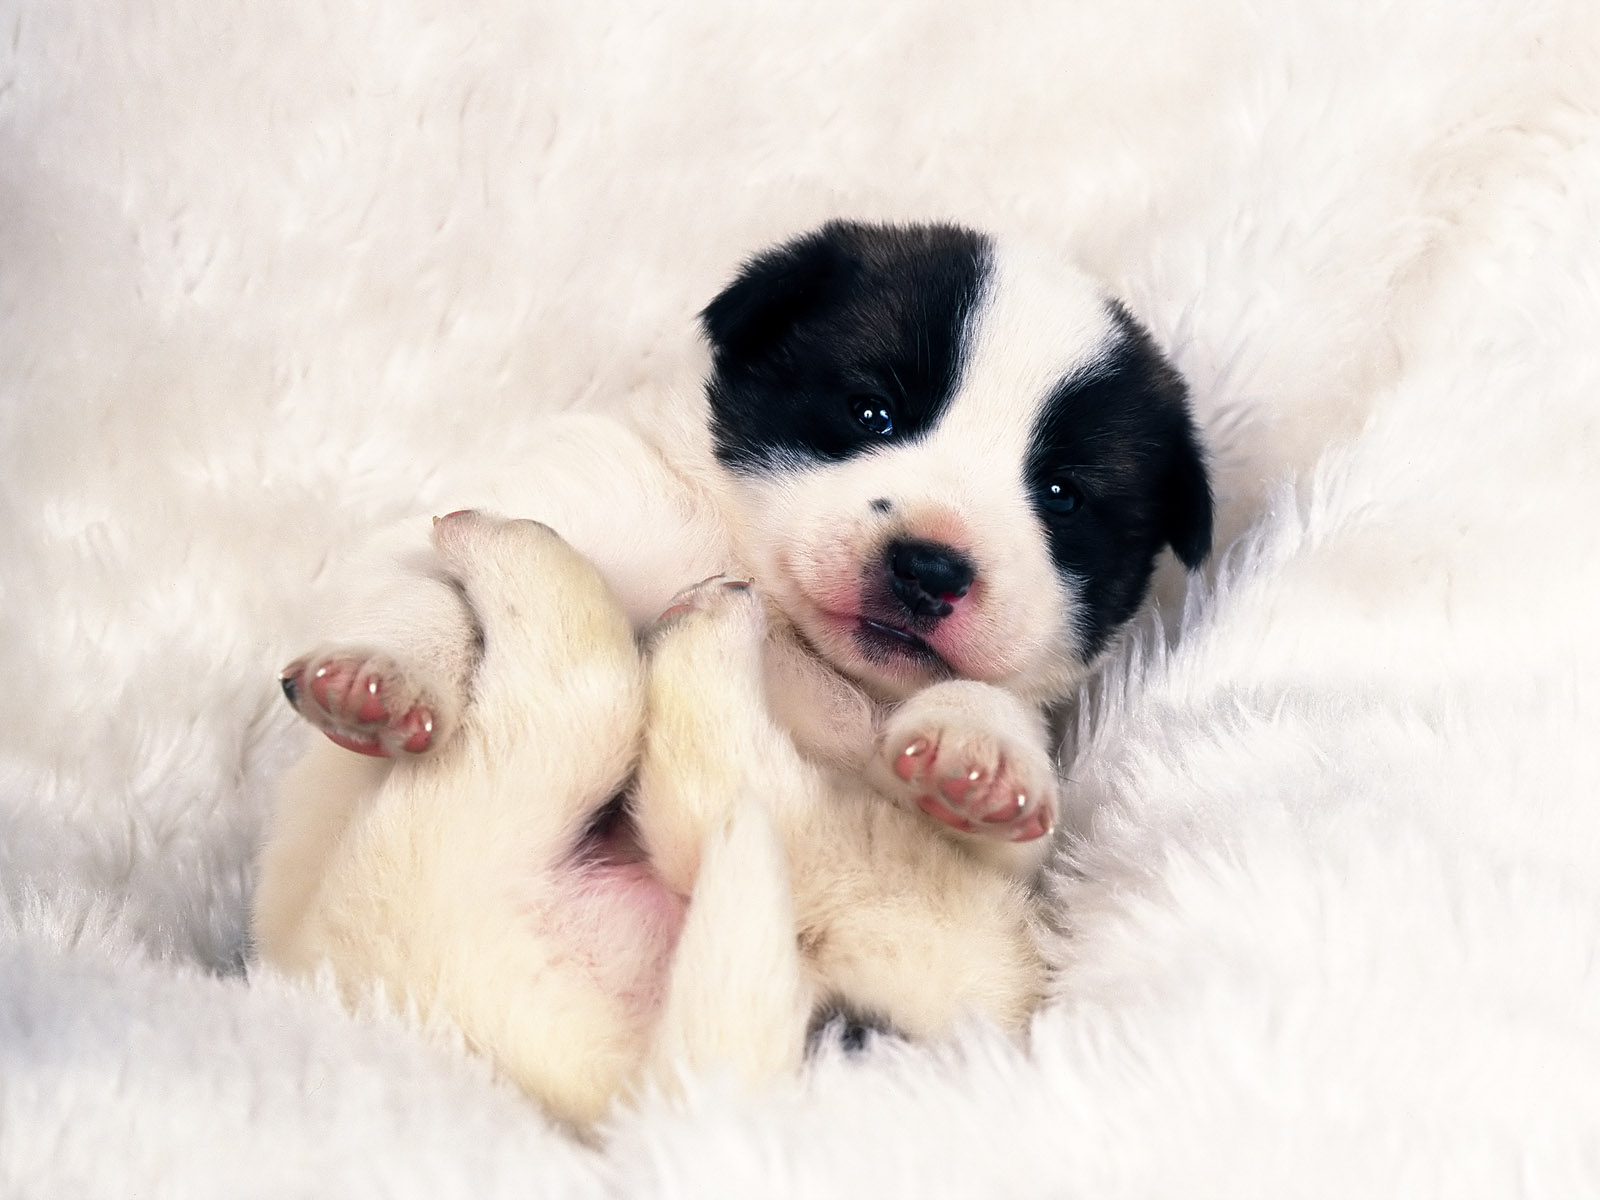 Cute puppy on HD desktop wallpaper.